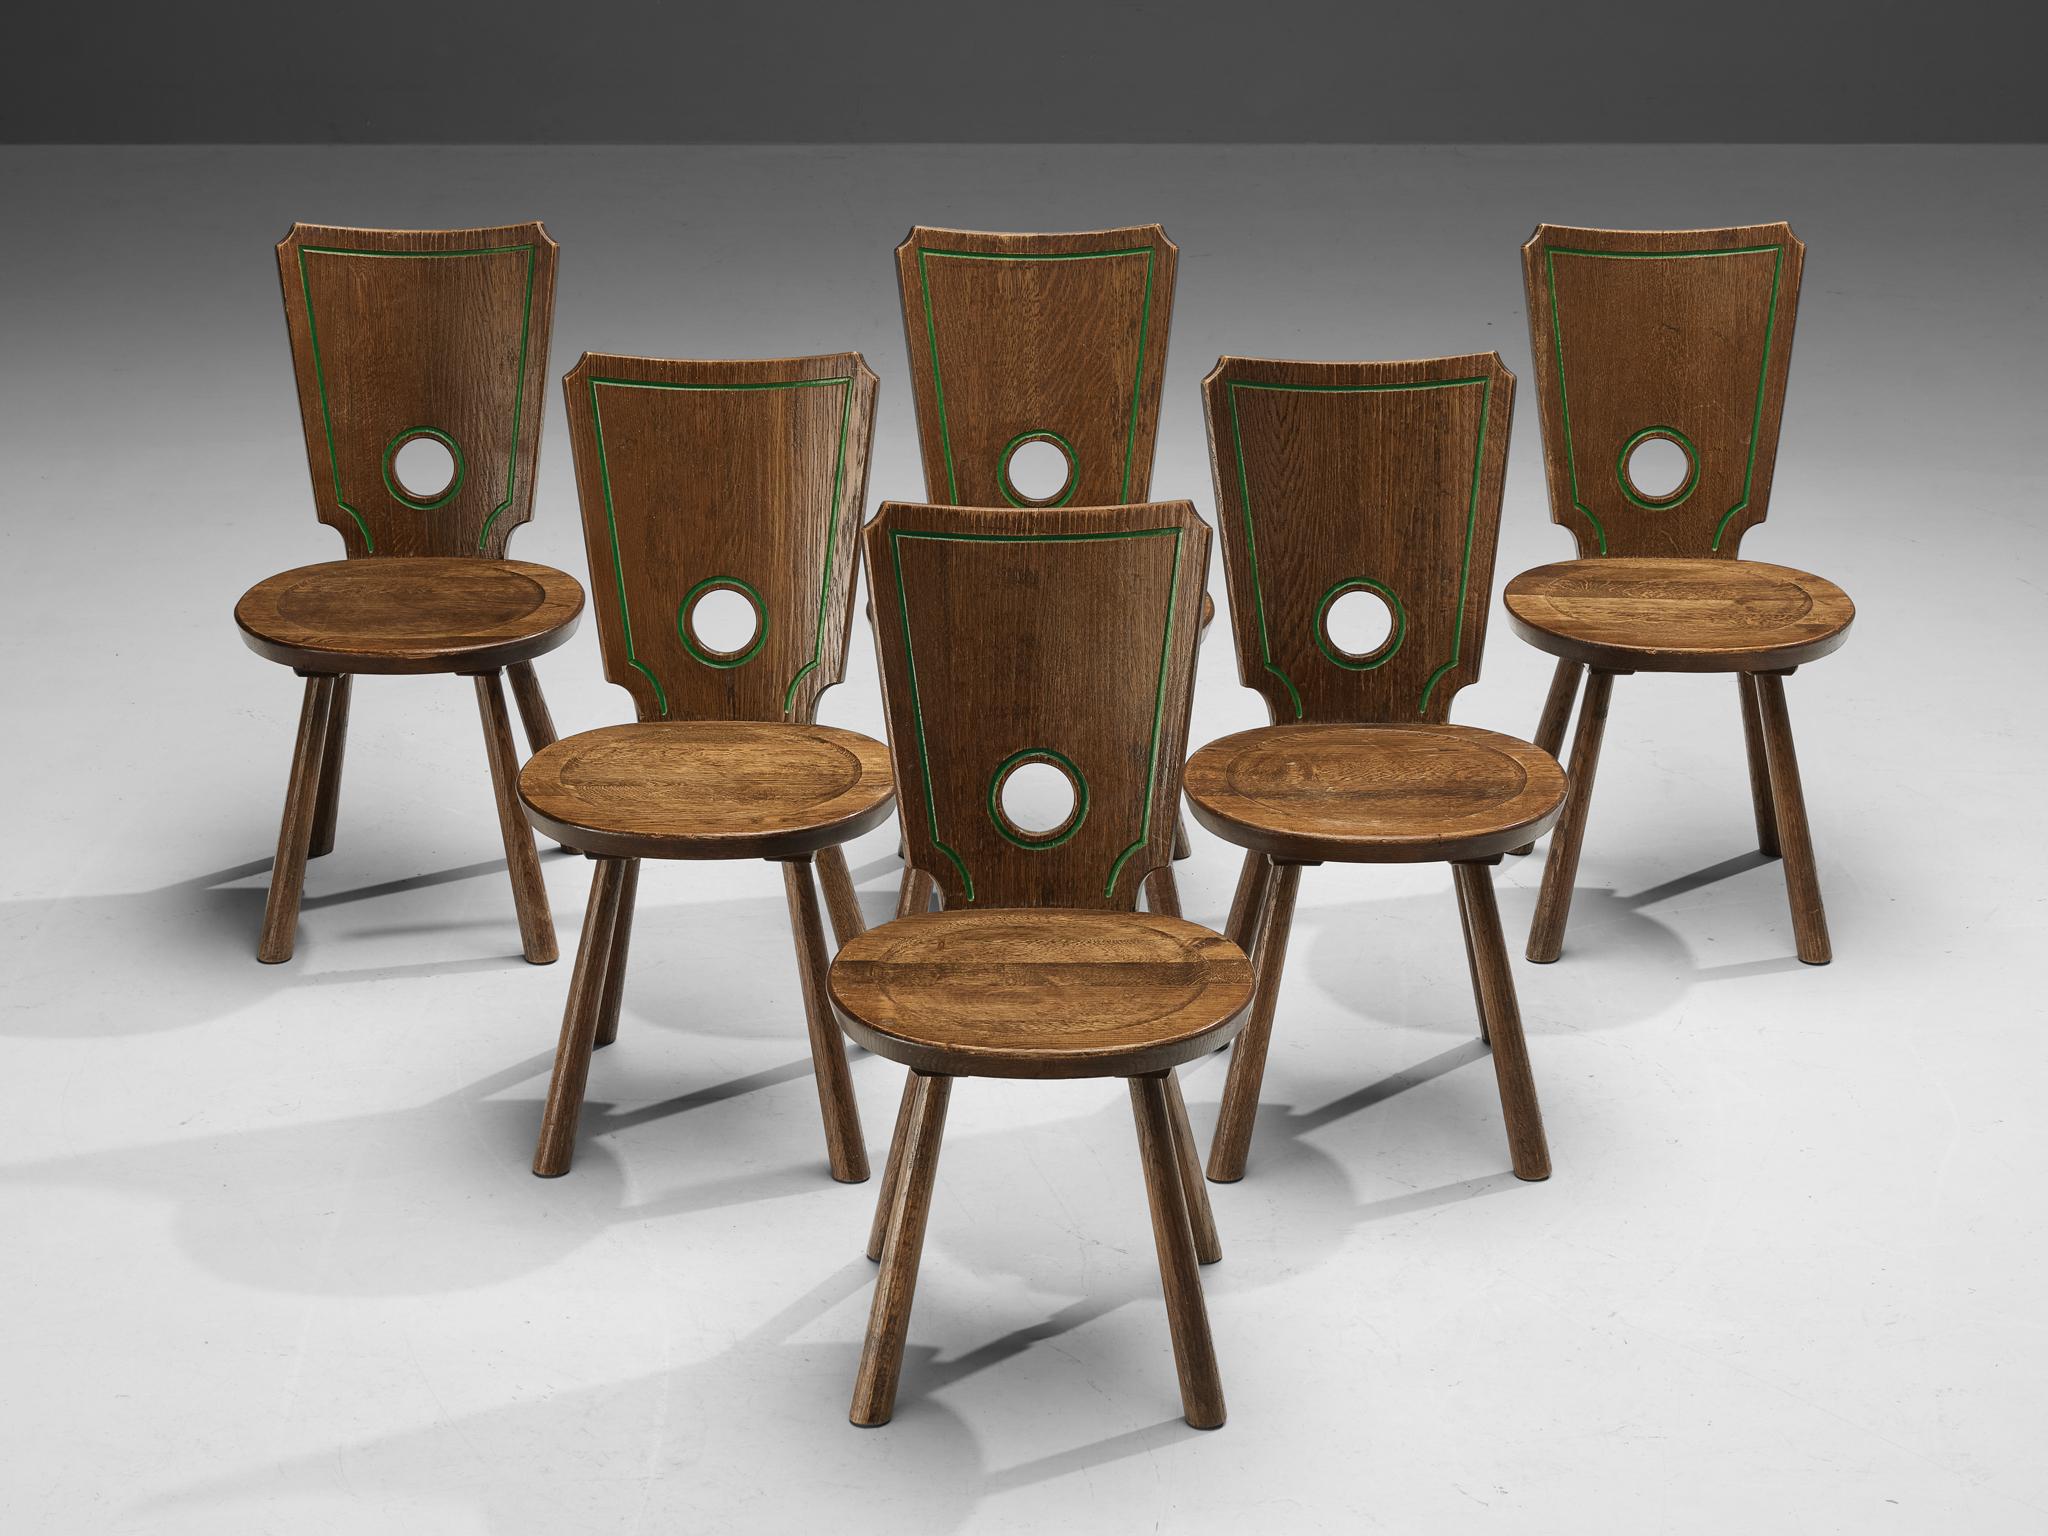 Satz von sechs Esszimmerstühlen, gebeizte Eiche, Messing, Metall, Frankreich, 1960er Jahre

Charakteristischer Satz von sechs französischen Esszimmerstühlen. Die abgerundete Aussparung in der Rückenlehne spielt eine wichtige visuelle Rolle, da sie